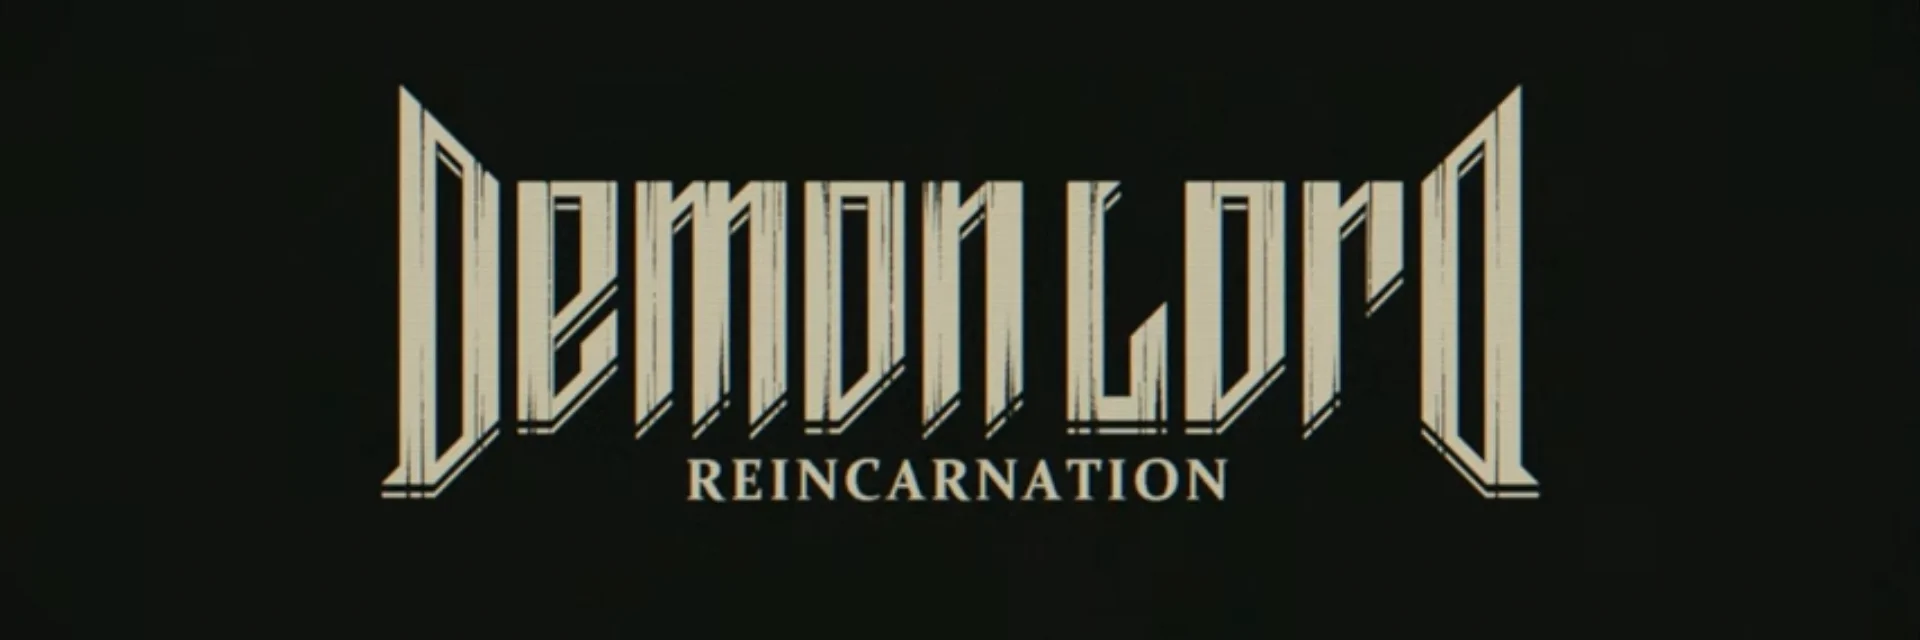 Demon Lord Reincarnation — «бродилка по подземельям» с необычным визуальным стилем.